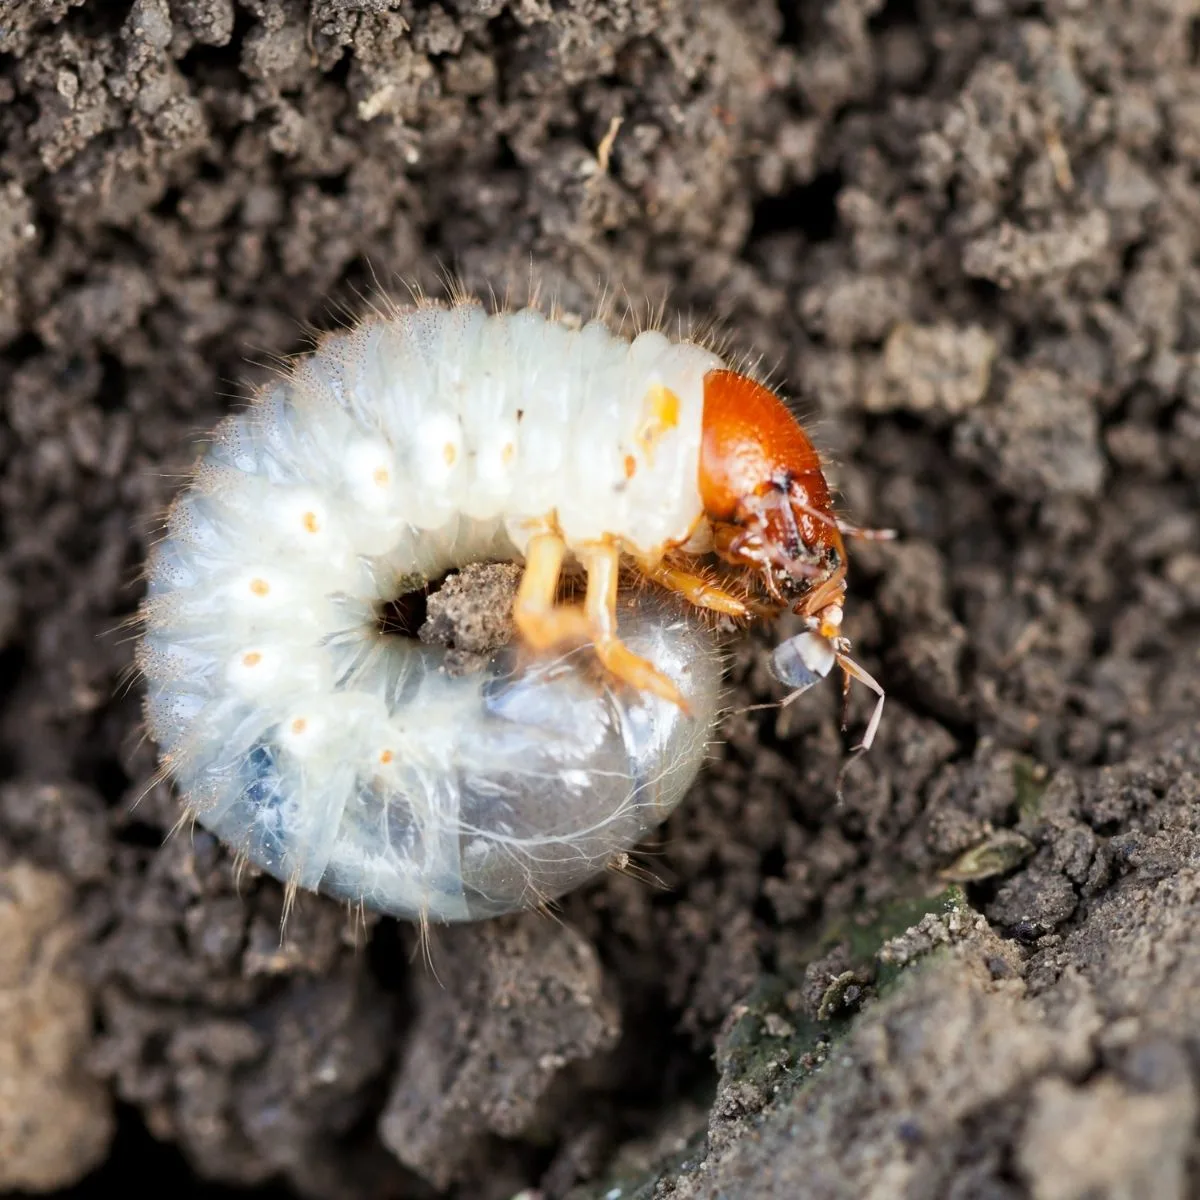 Japanese beetle larvae/grub